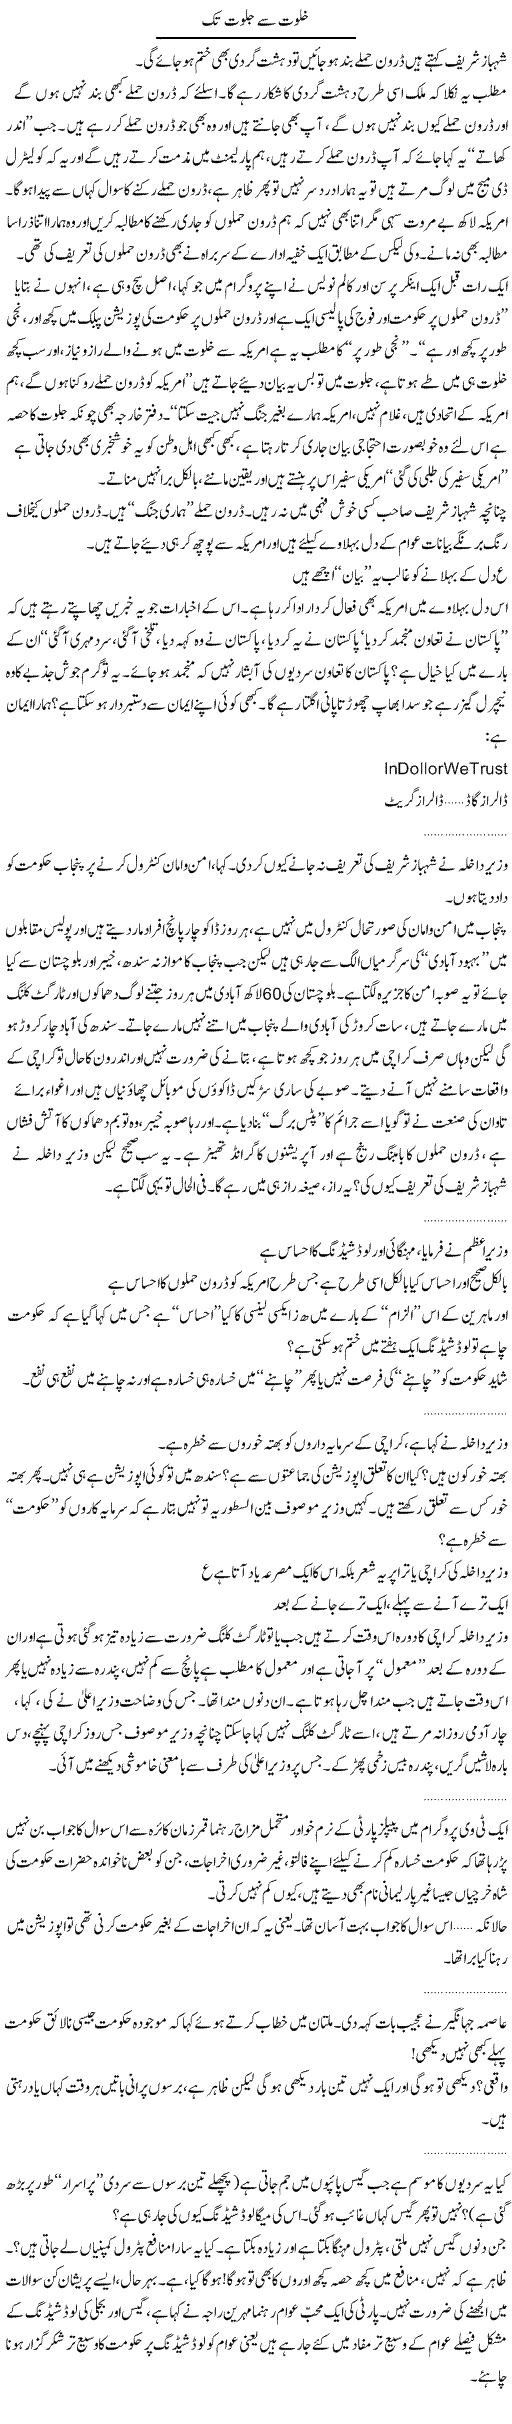 Drones and Shahbaz Express Column Abdullah Tariq 15 April 2011